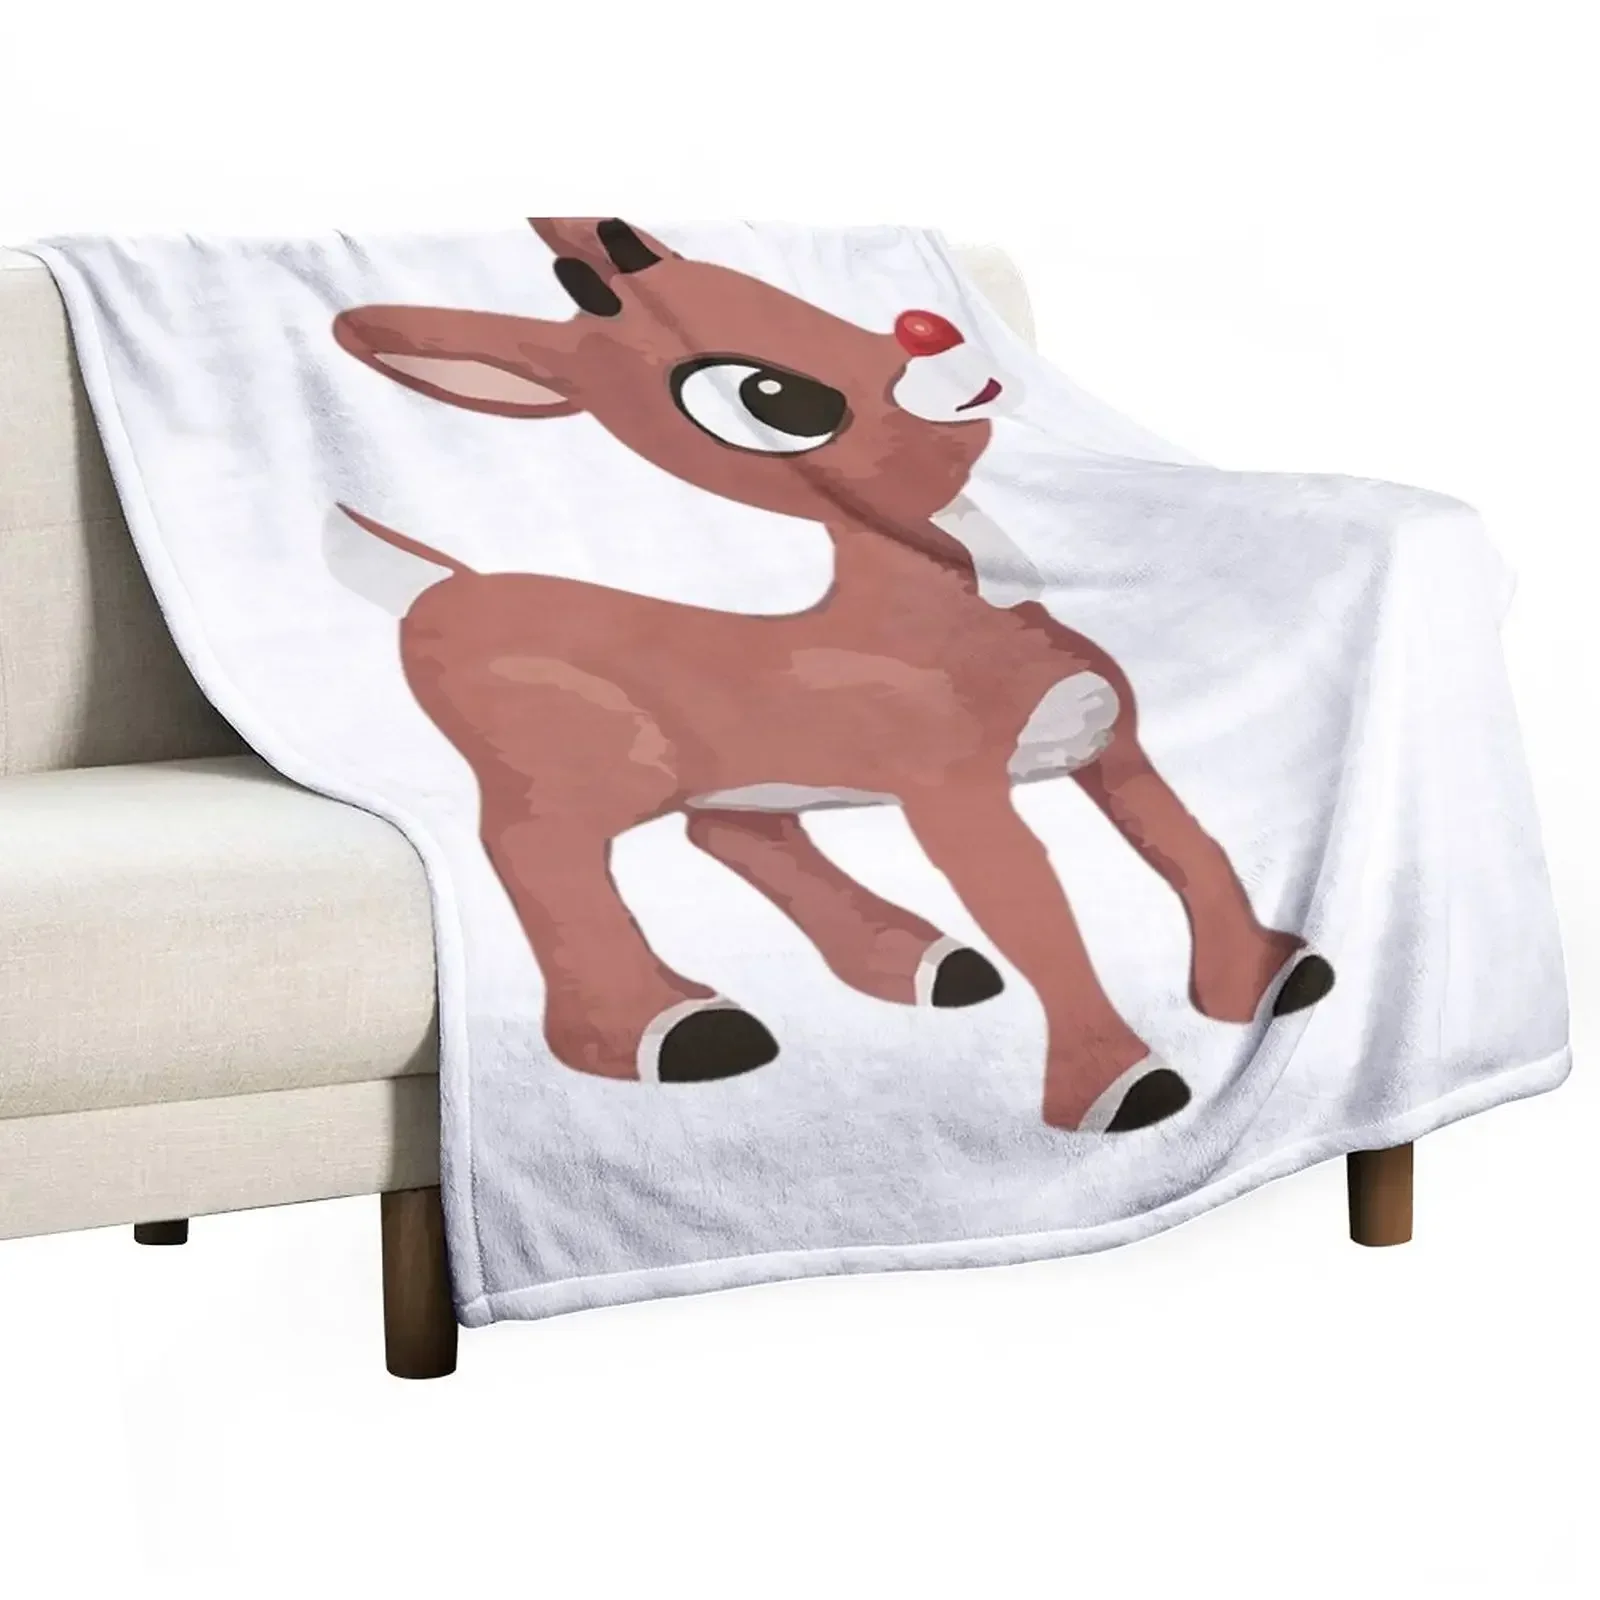 

Классическая футболка Rudolph с изображением Красного оленя, Классическое Одеяло Rudolph, модные диваны, ворсистые летние тонкие одеяла